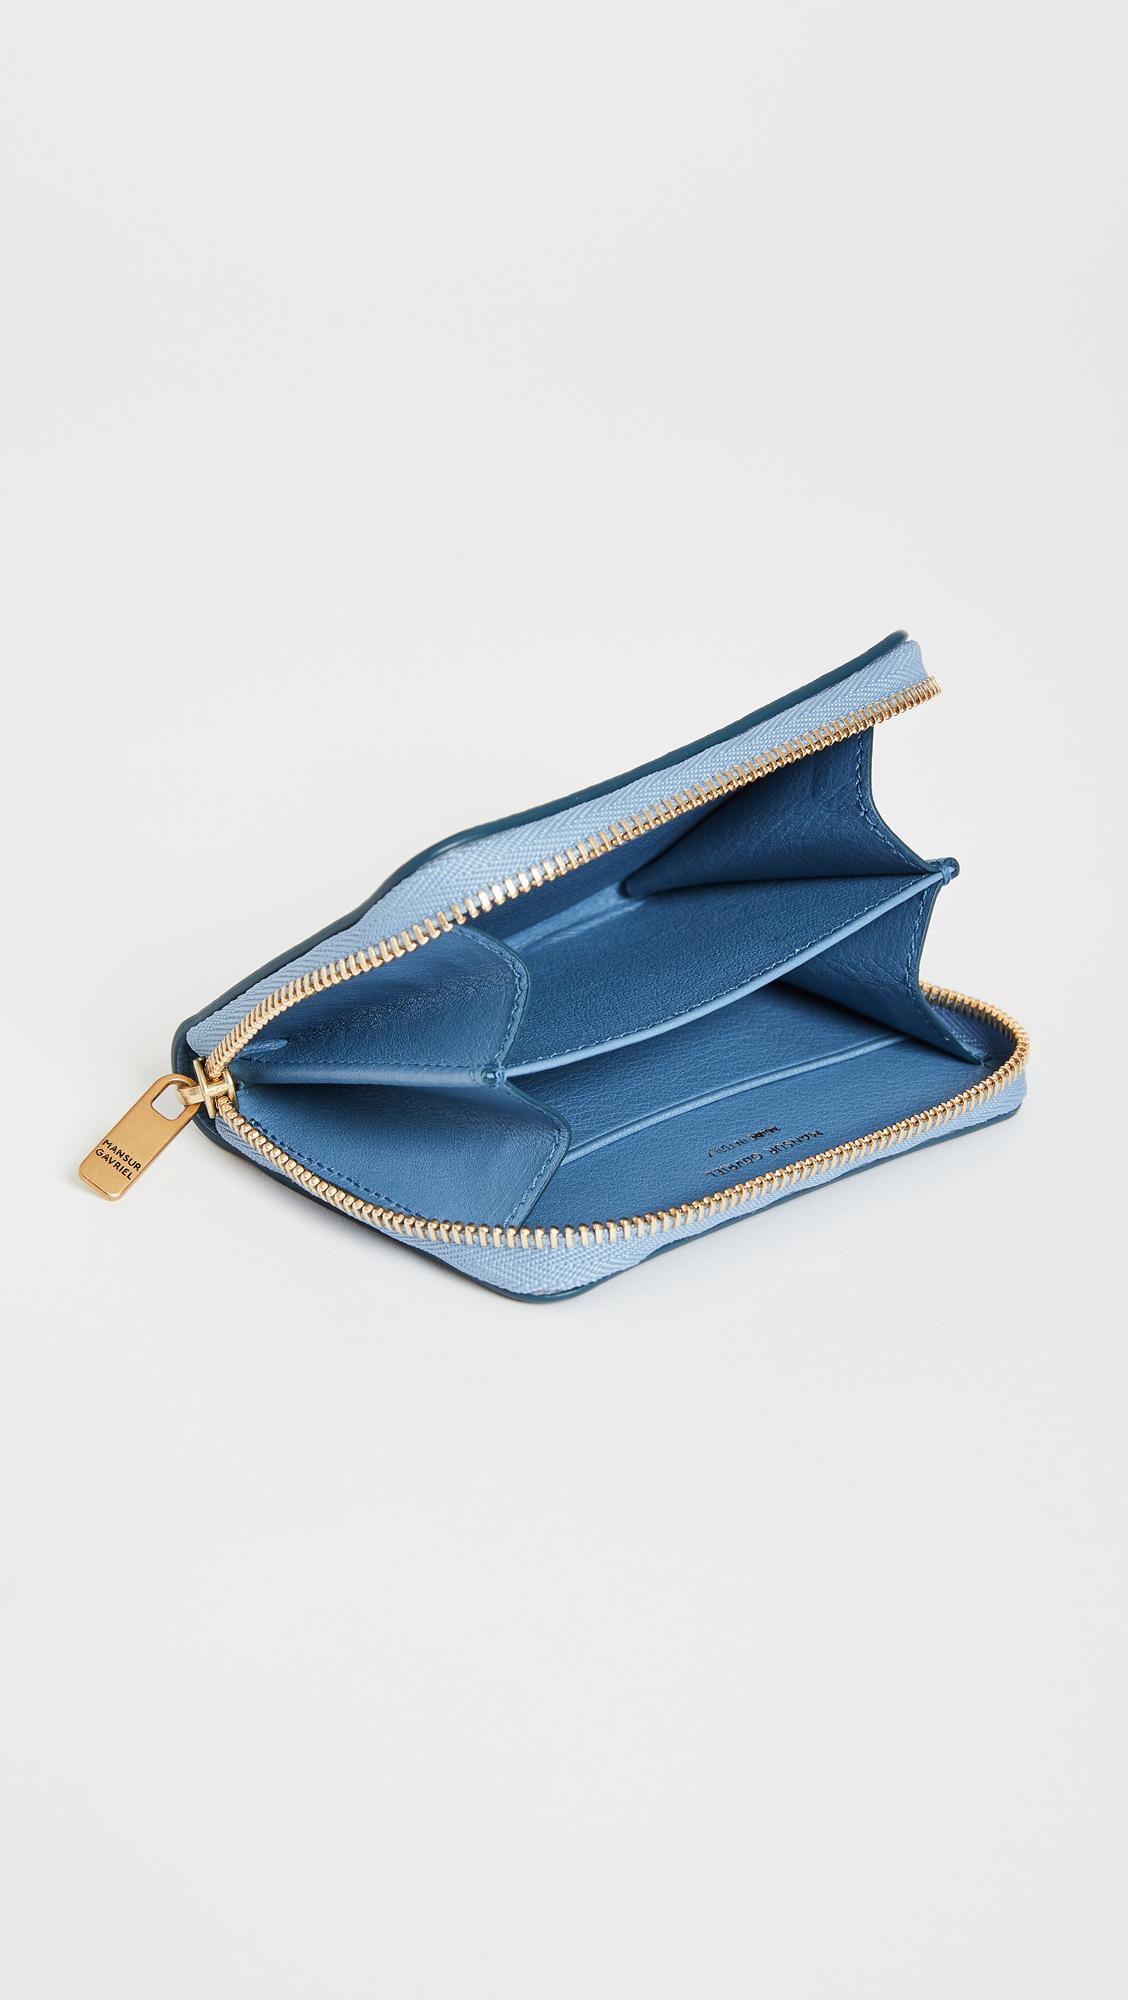 Mansur Gavriel Compact Zip Wallet in Blue